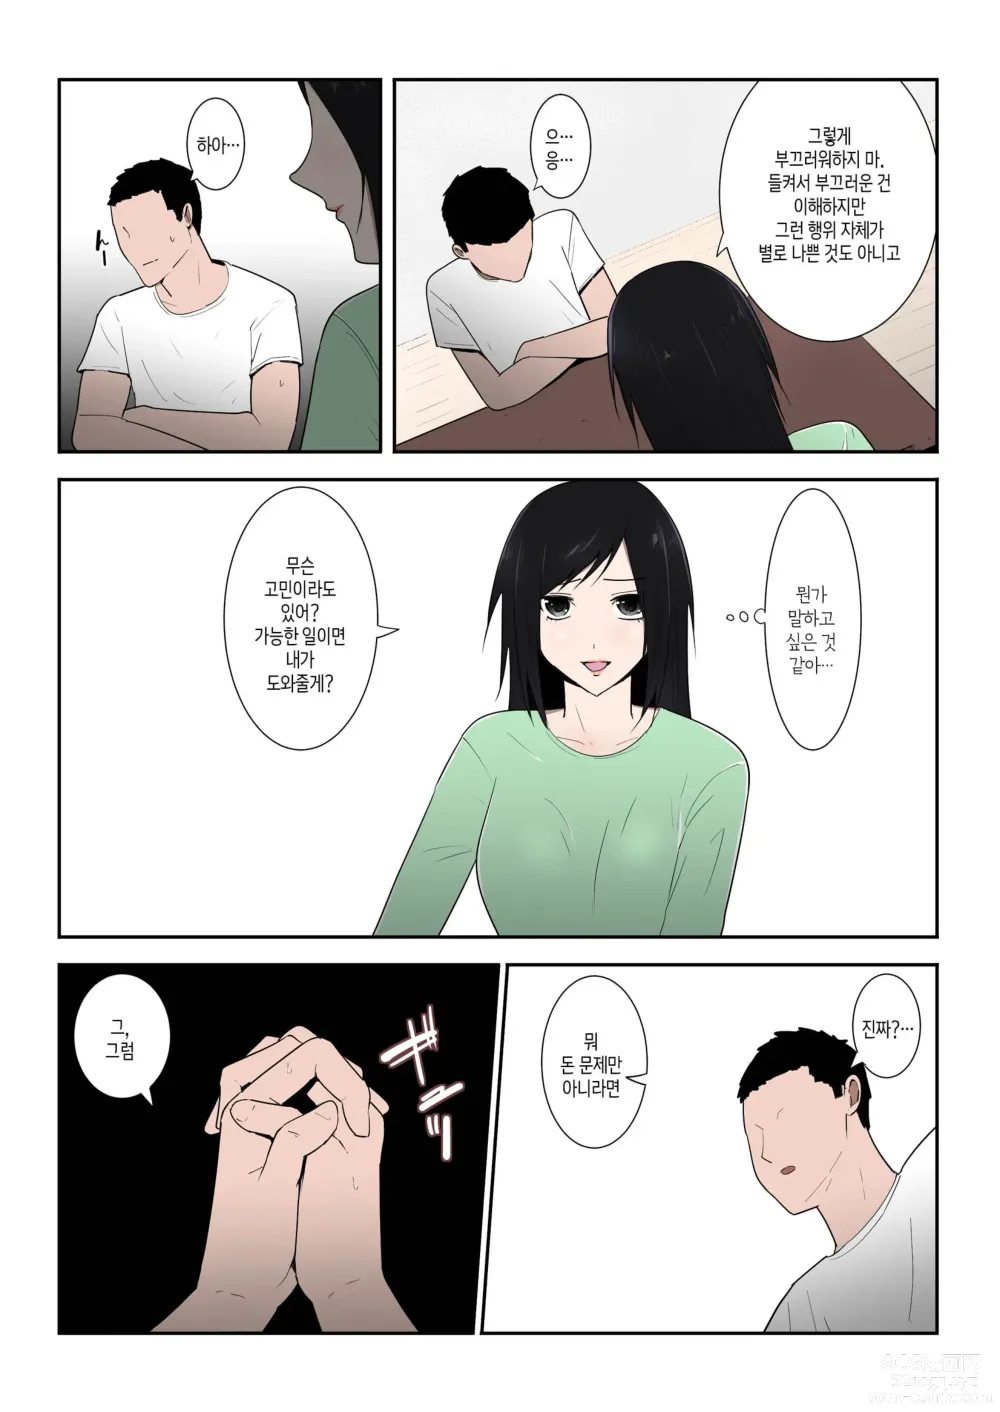 Page 5 of doujinshi 엄마 한 번만이라도 좋으니까...!